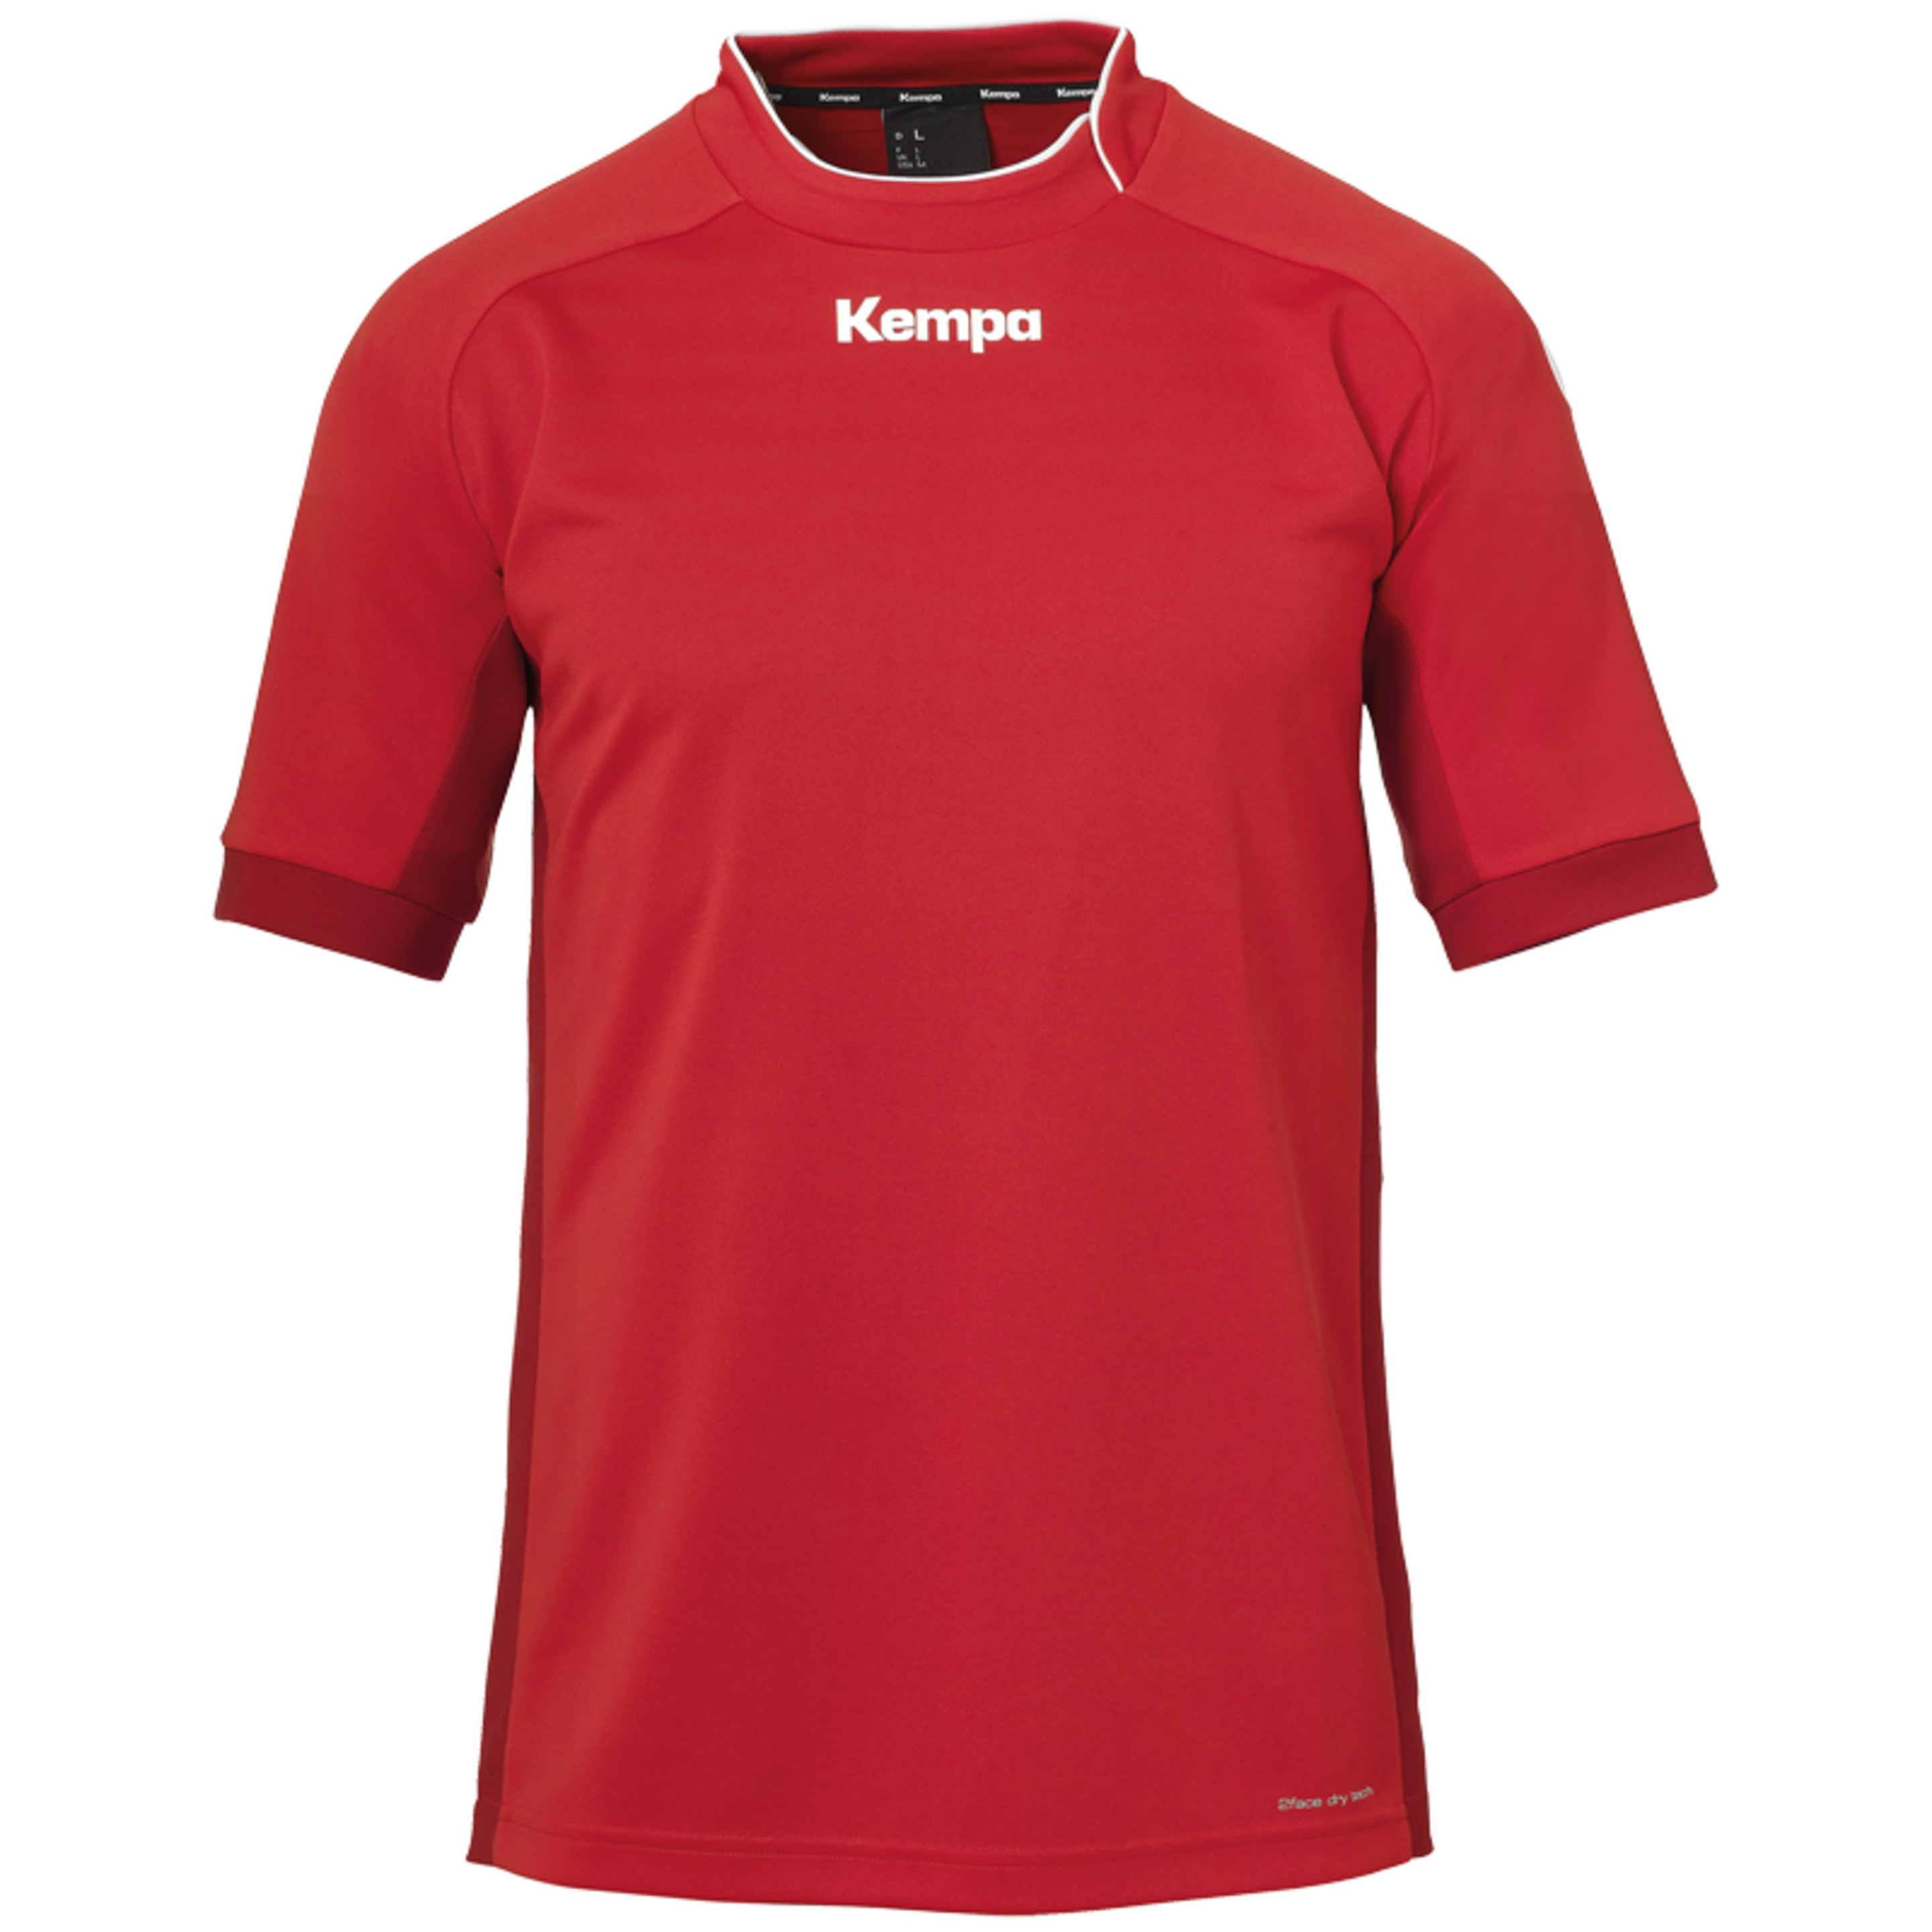 Prime Shirt Rojo/rojo Chili Kempa - rojo - 